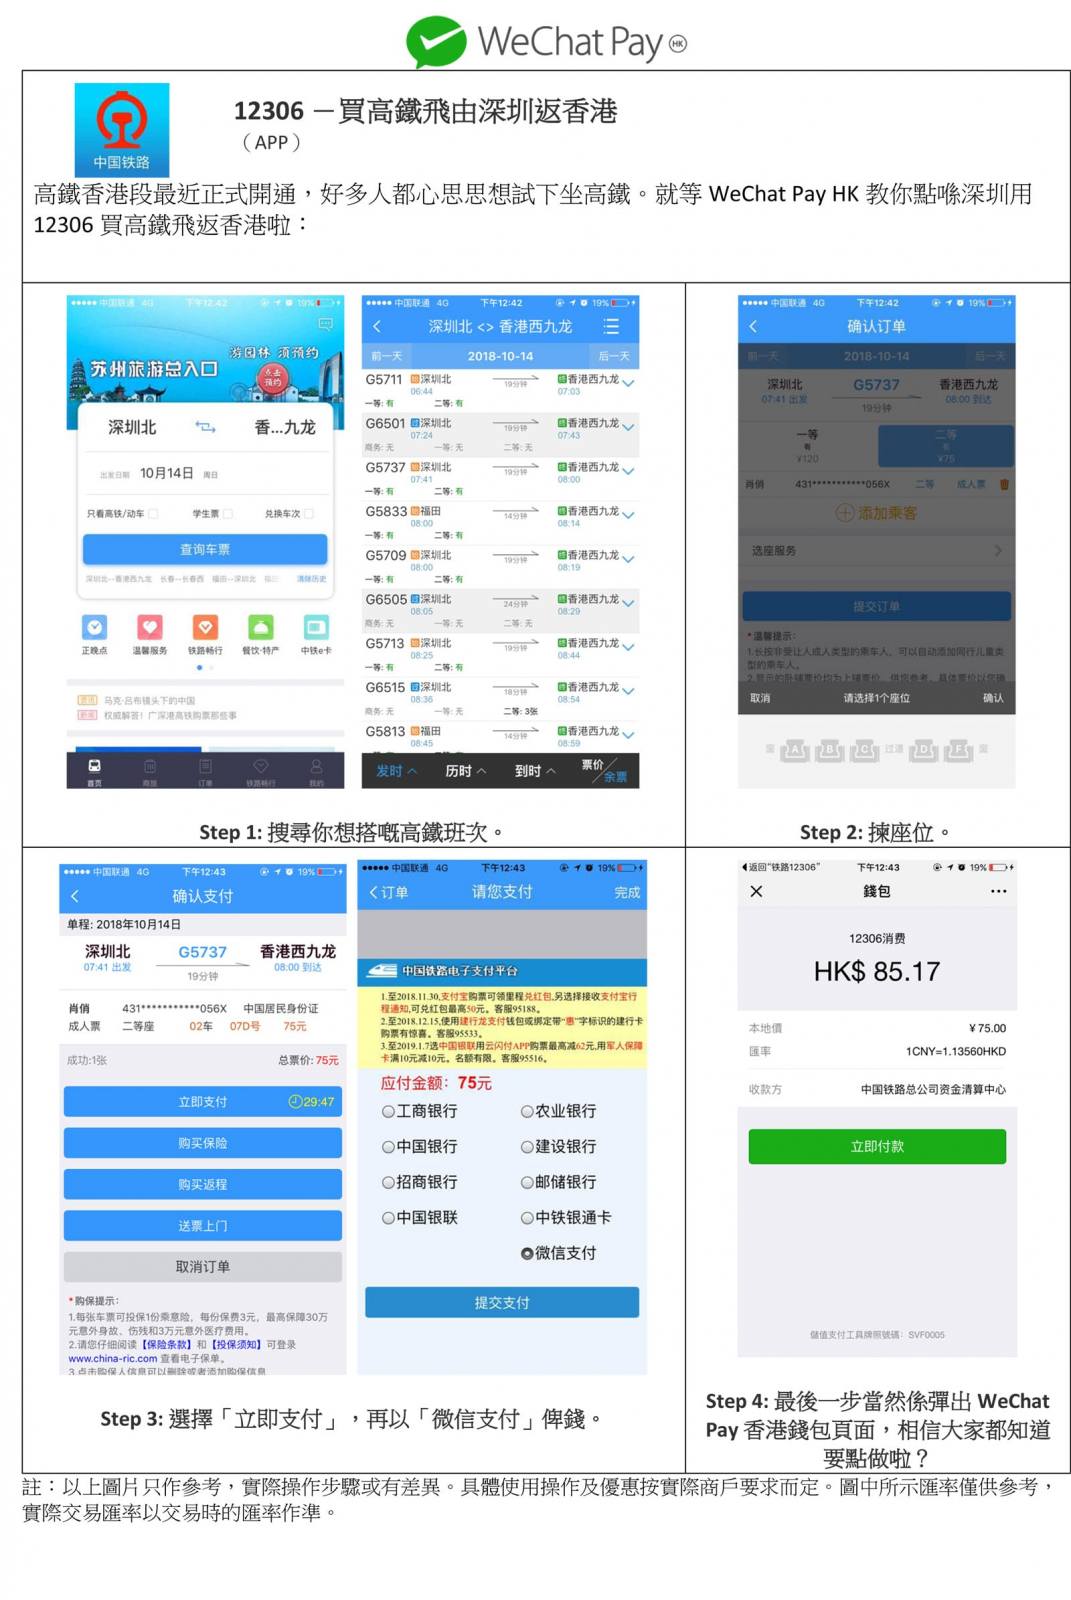 精選慳家人優惠推介：WeChat Pay HK政略：教你玩盡「12306中國鐵路」買高鐵車票、「滴滴出行」、「美團」、「大眾點評」＞即刻去睇睇優惠詳情啦！